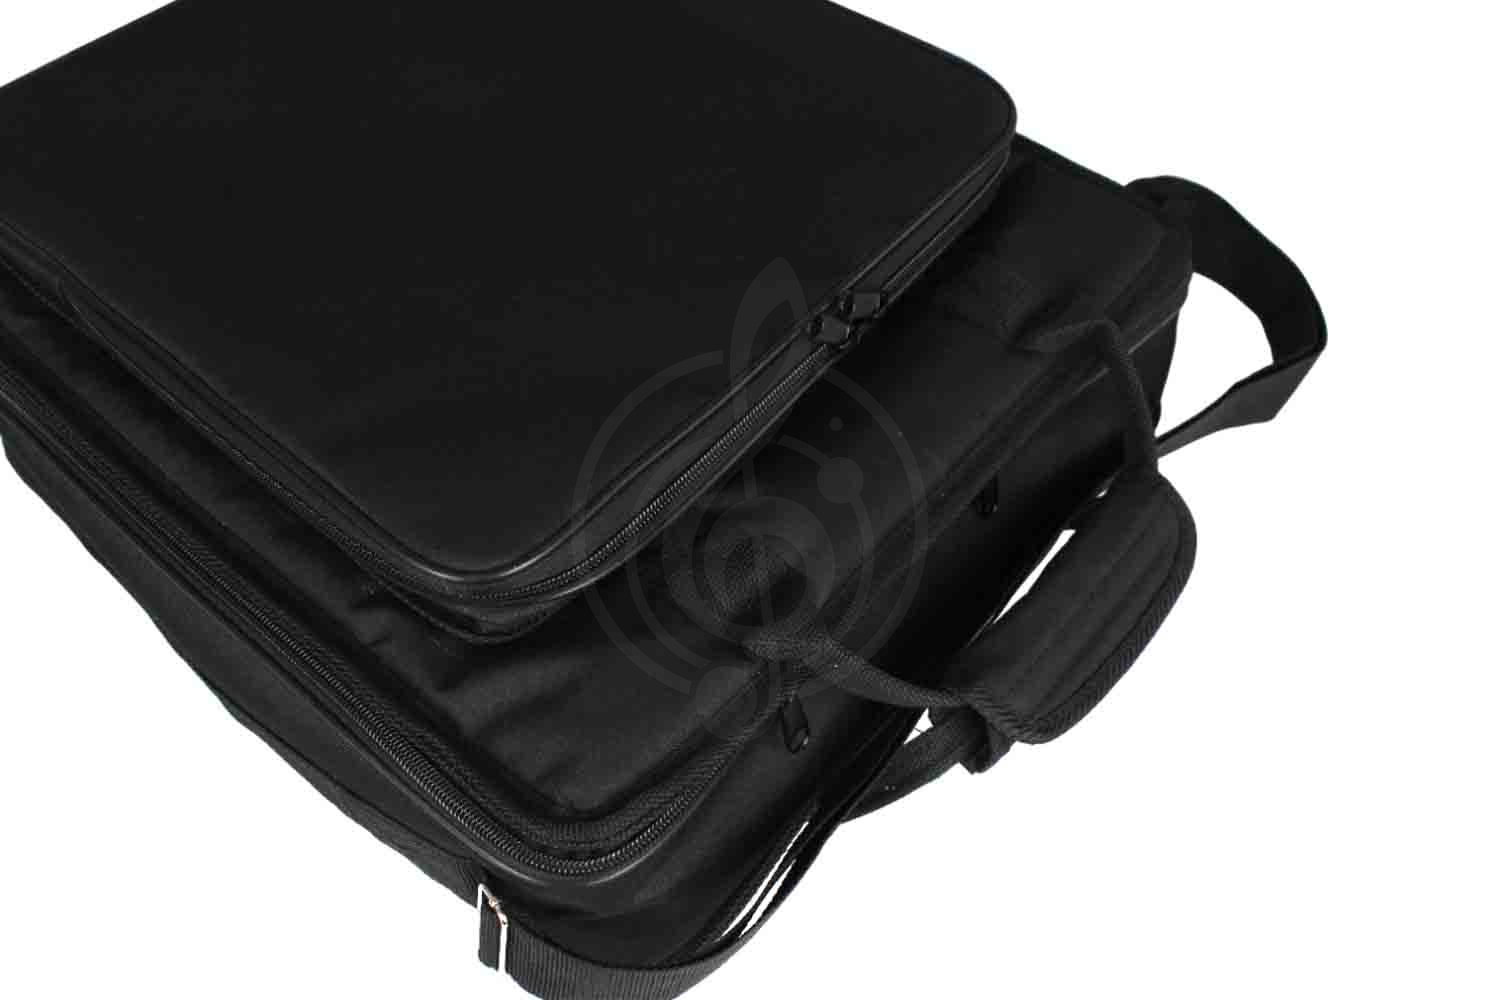 Чехол и кейс для звукового оборудования Magic Music Bag Ч-ПМ8 - чехол для микшера GrandVox PM-8, Magic Music Bag Ч-ПМ8 в магазине DominantaMusic - фото 8